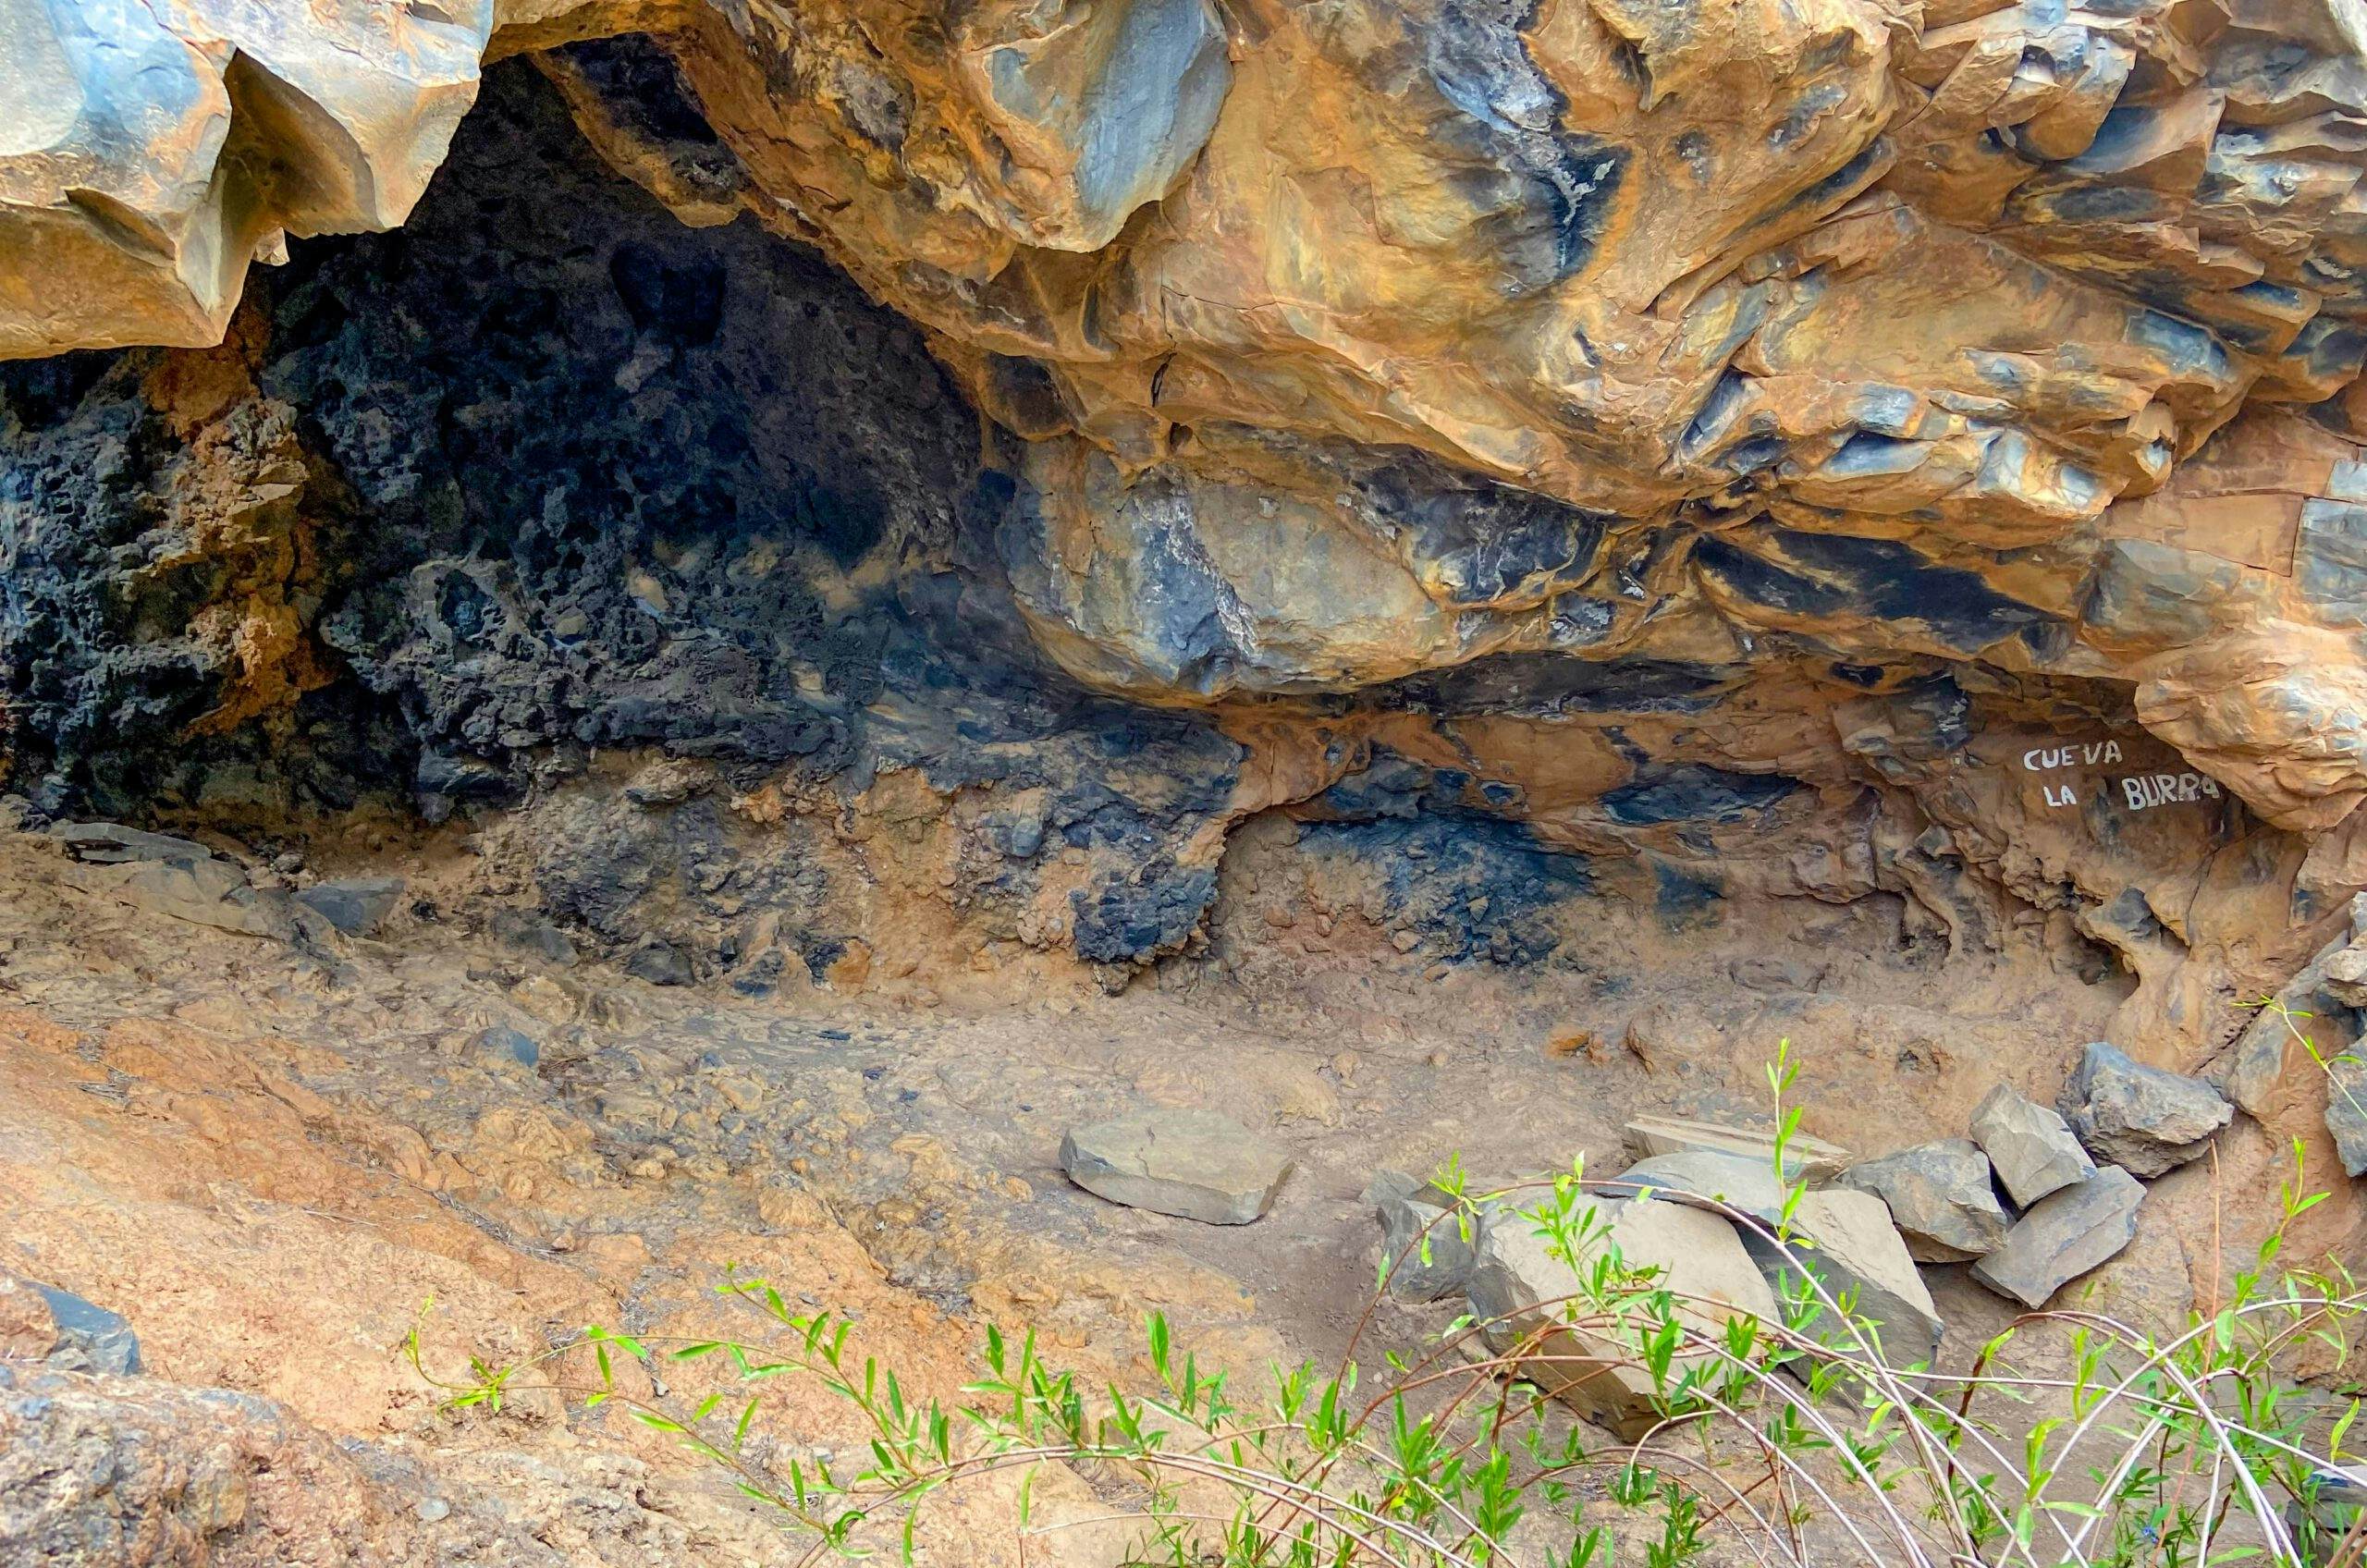 kleine Höhle unterhalb einer Felswand - Cueva La Burra